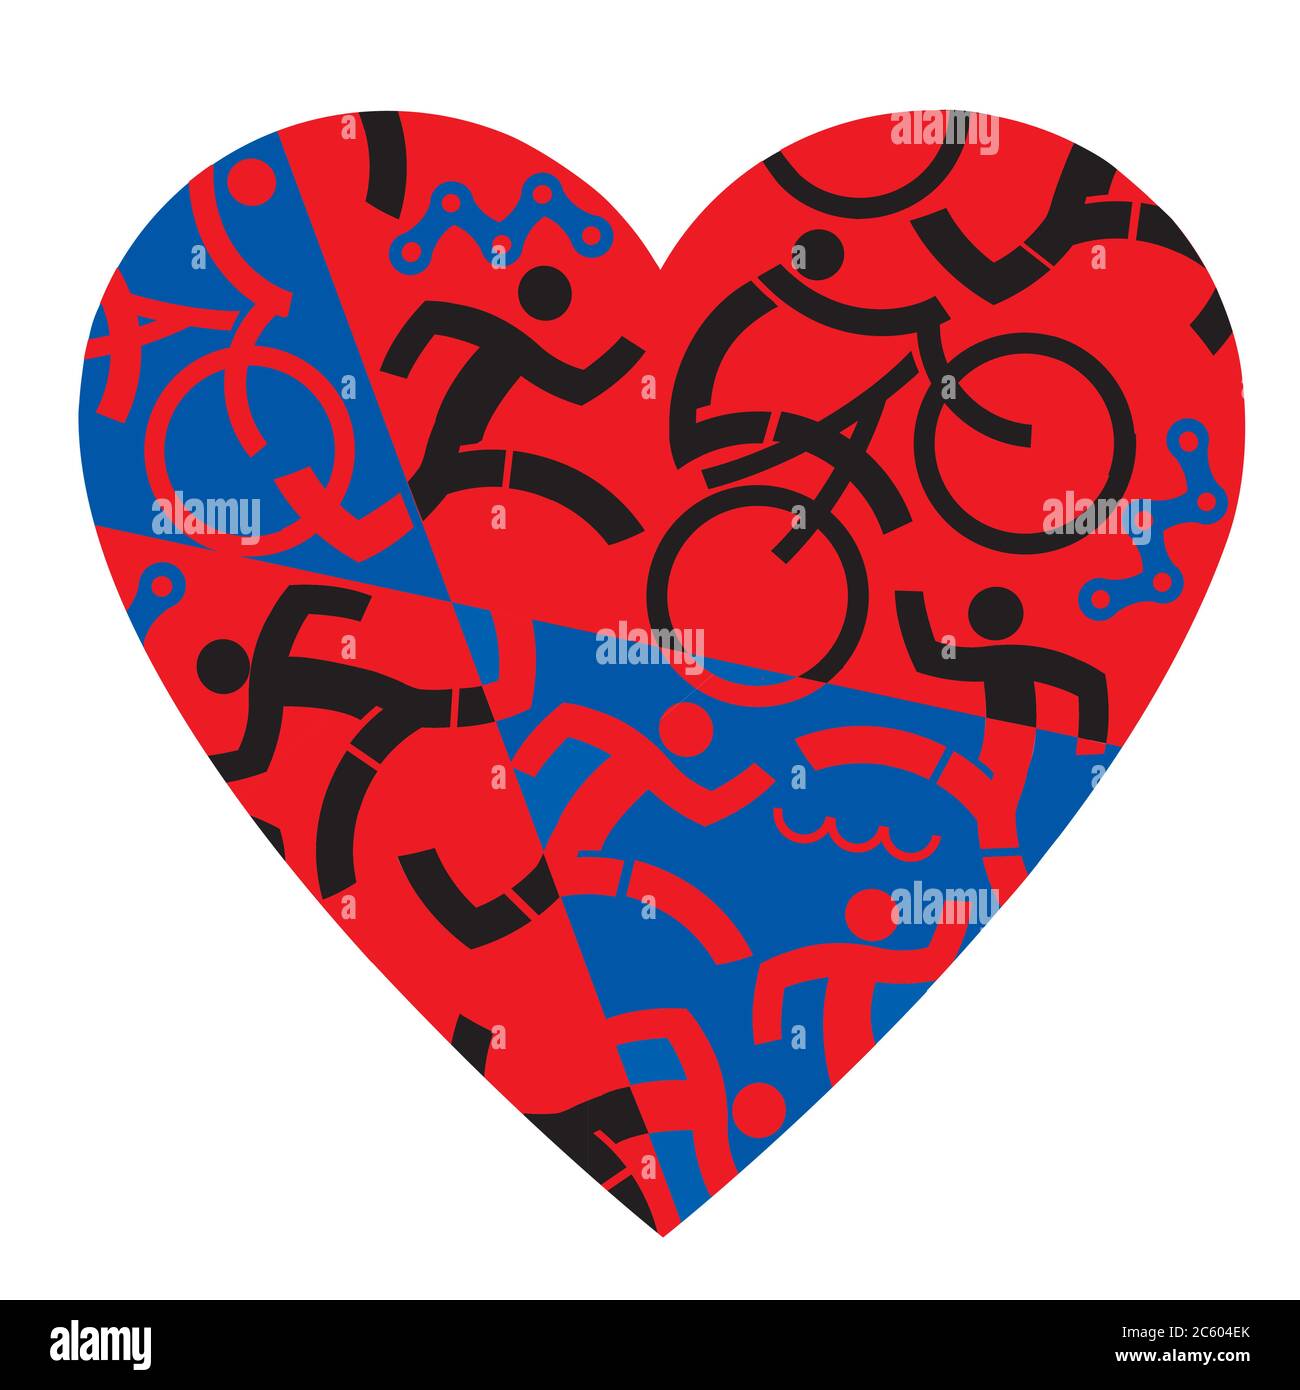 Me encanta el Triatlón, correr, nadar, montar en bicicleta. Ilustración con símbolo de corazón rojo y negro con atletas de triatlón, nadadores, ciclistas, corredores. Ilustración del Vector